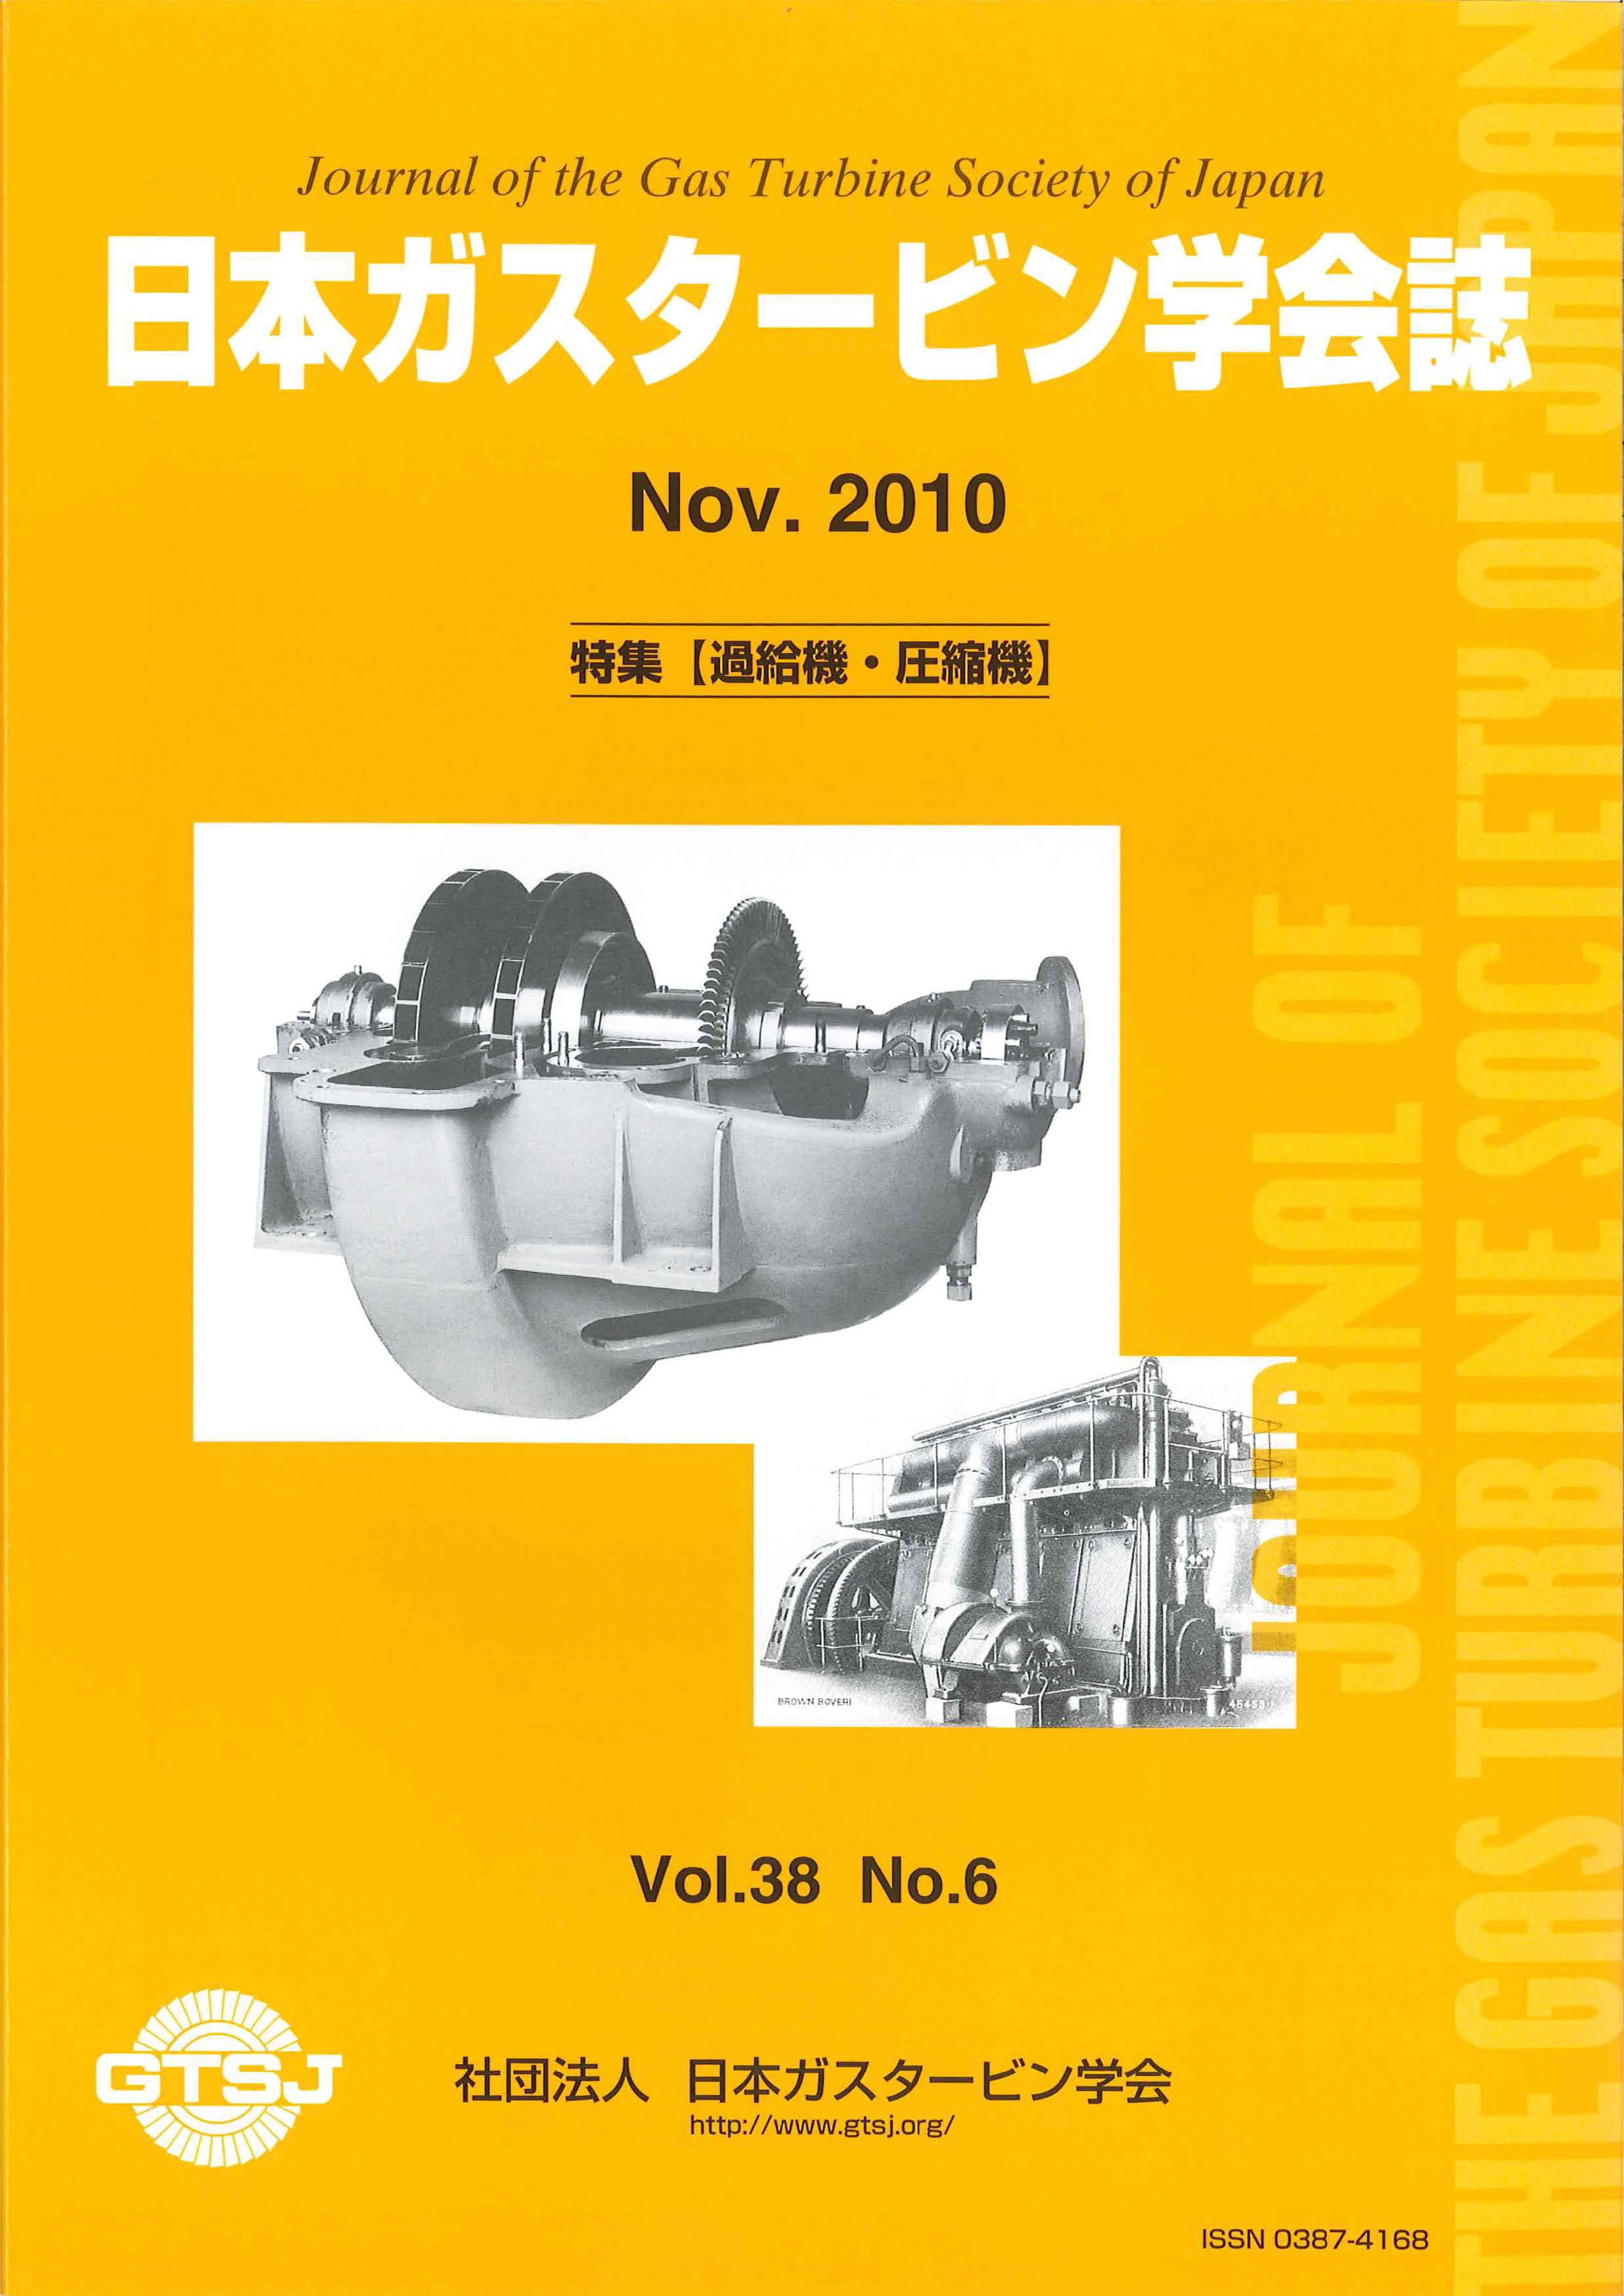 日本ガスタービン学会誌 Vol.38 No.6 2010年11月 表紙画像